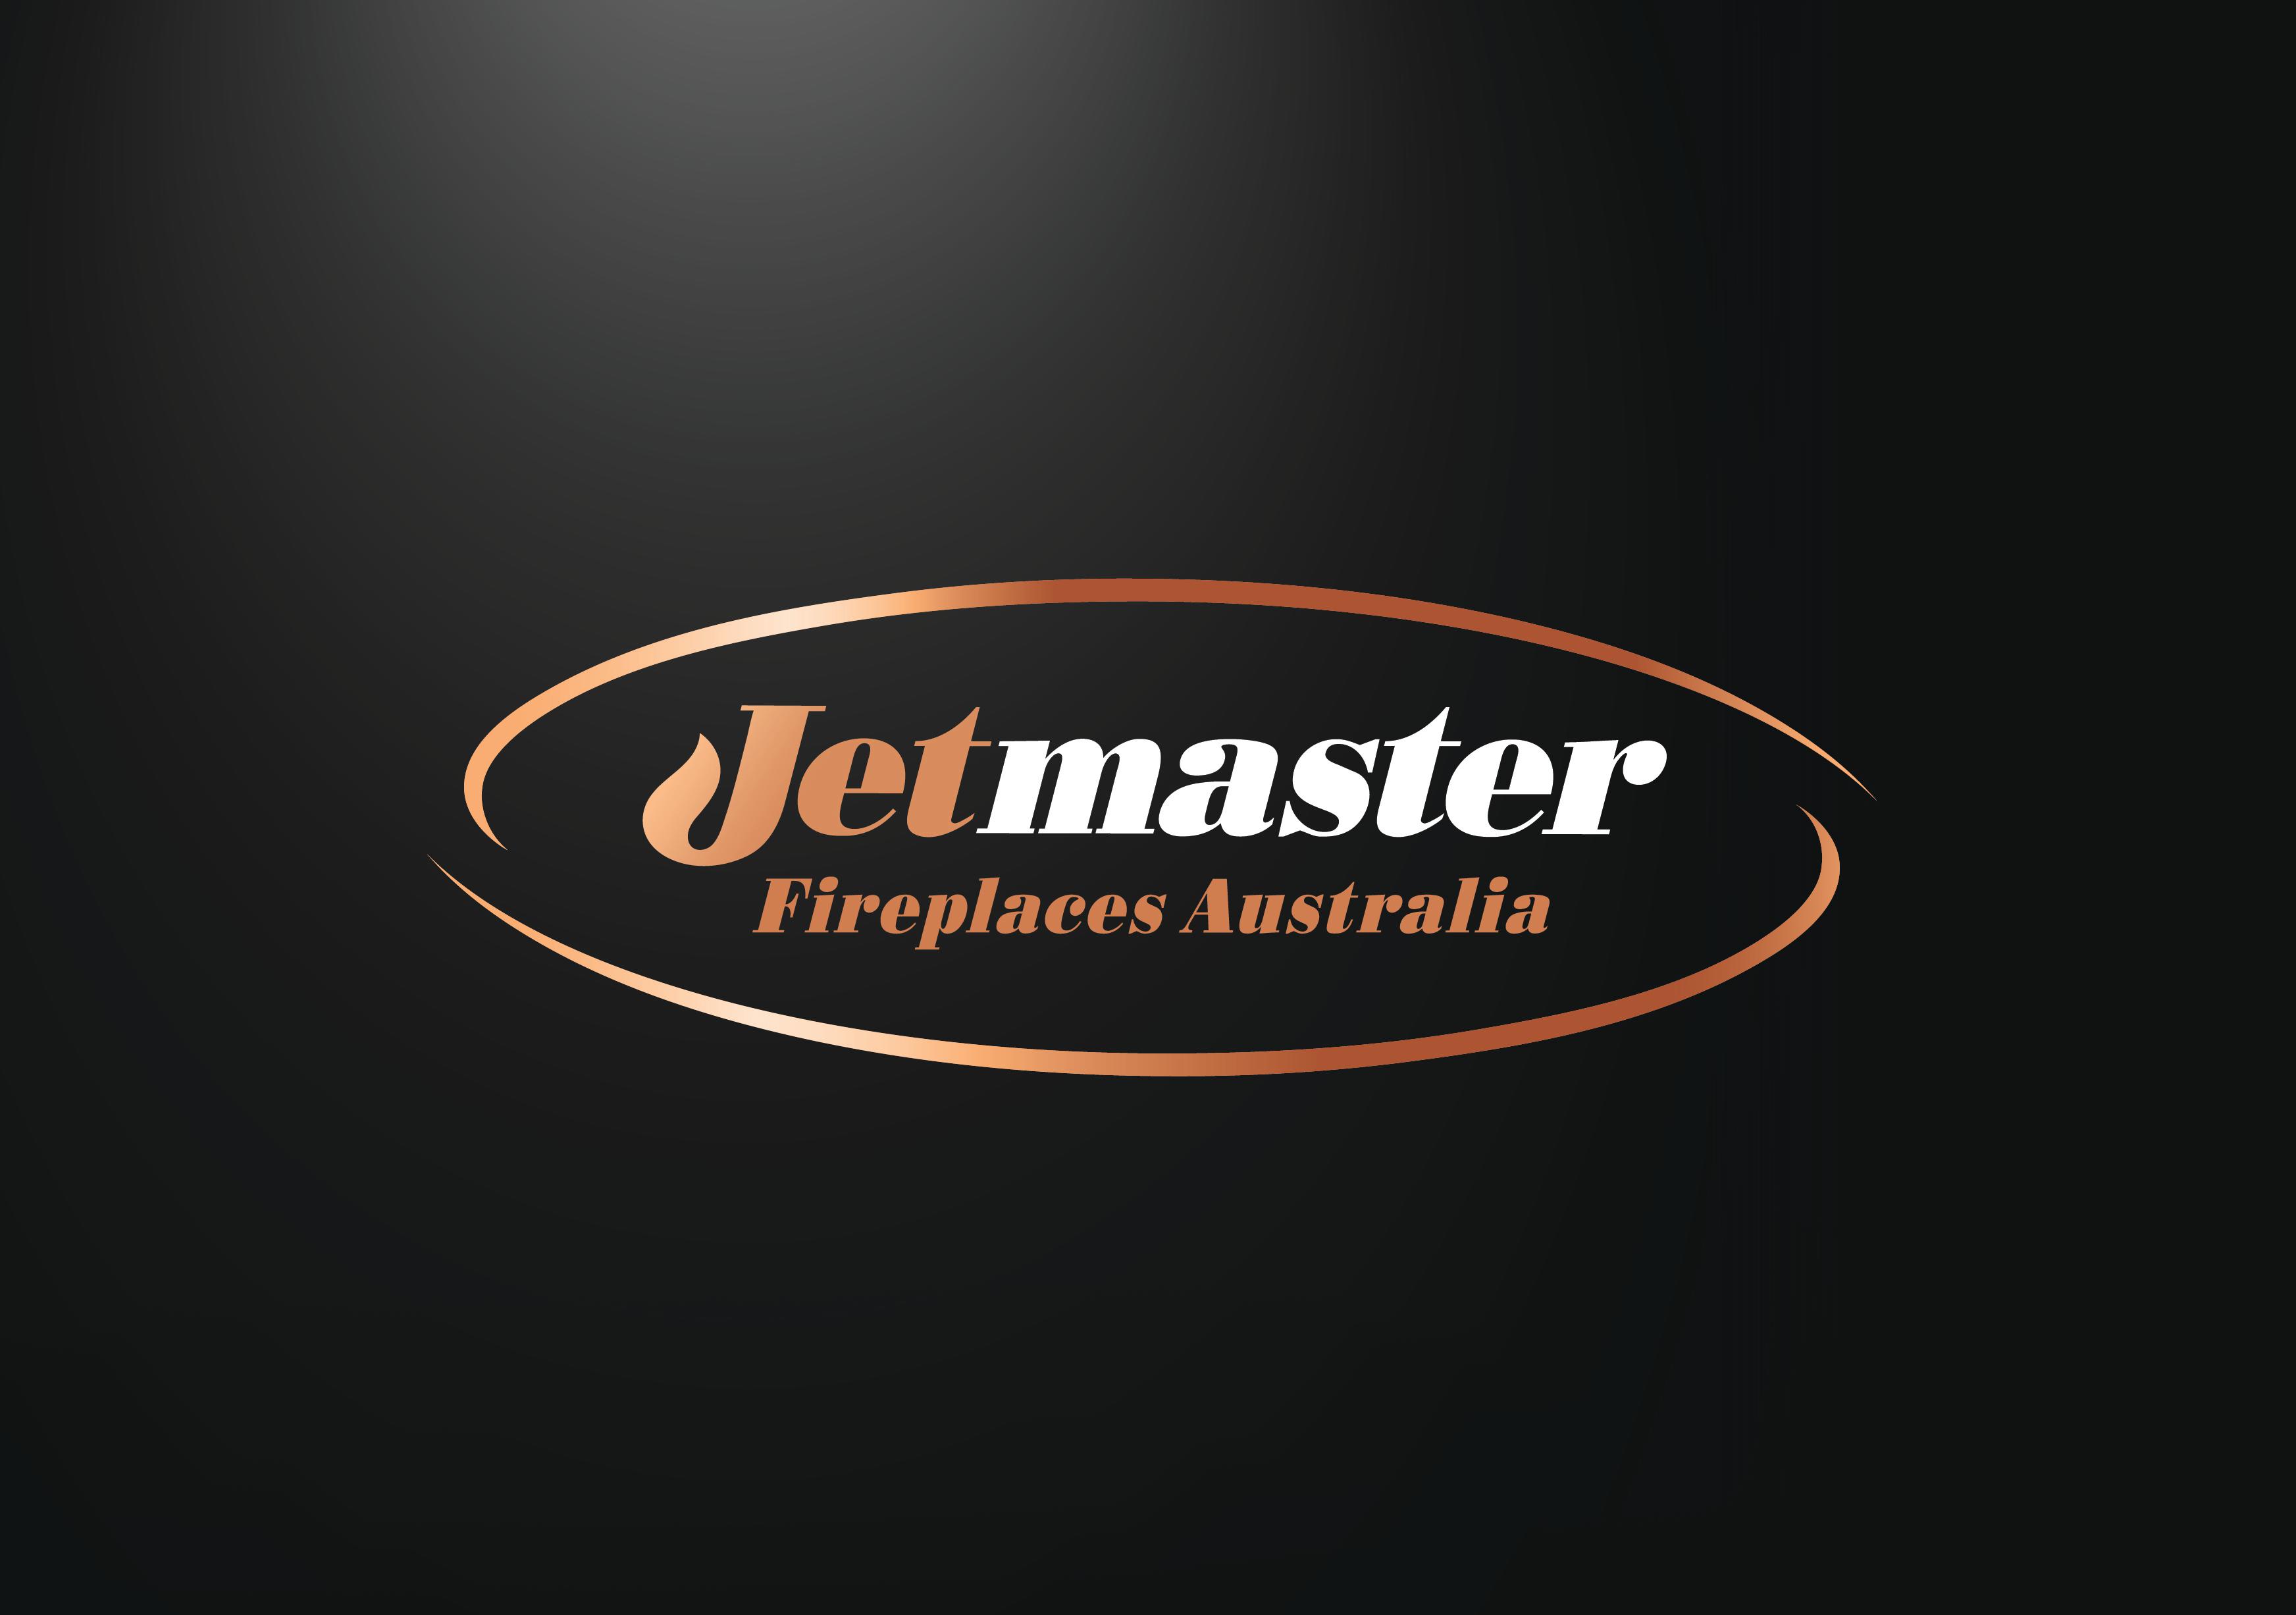 Images Jetmaster Newcastle